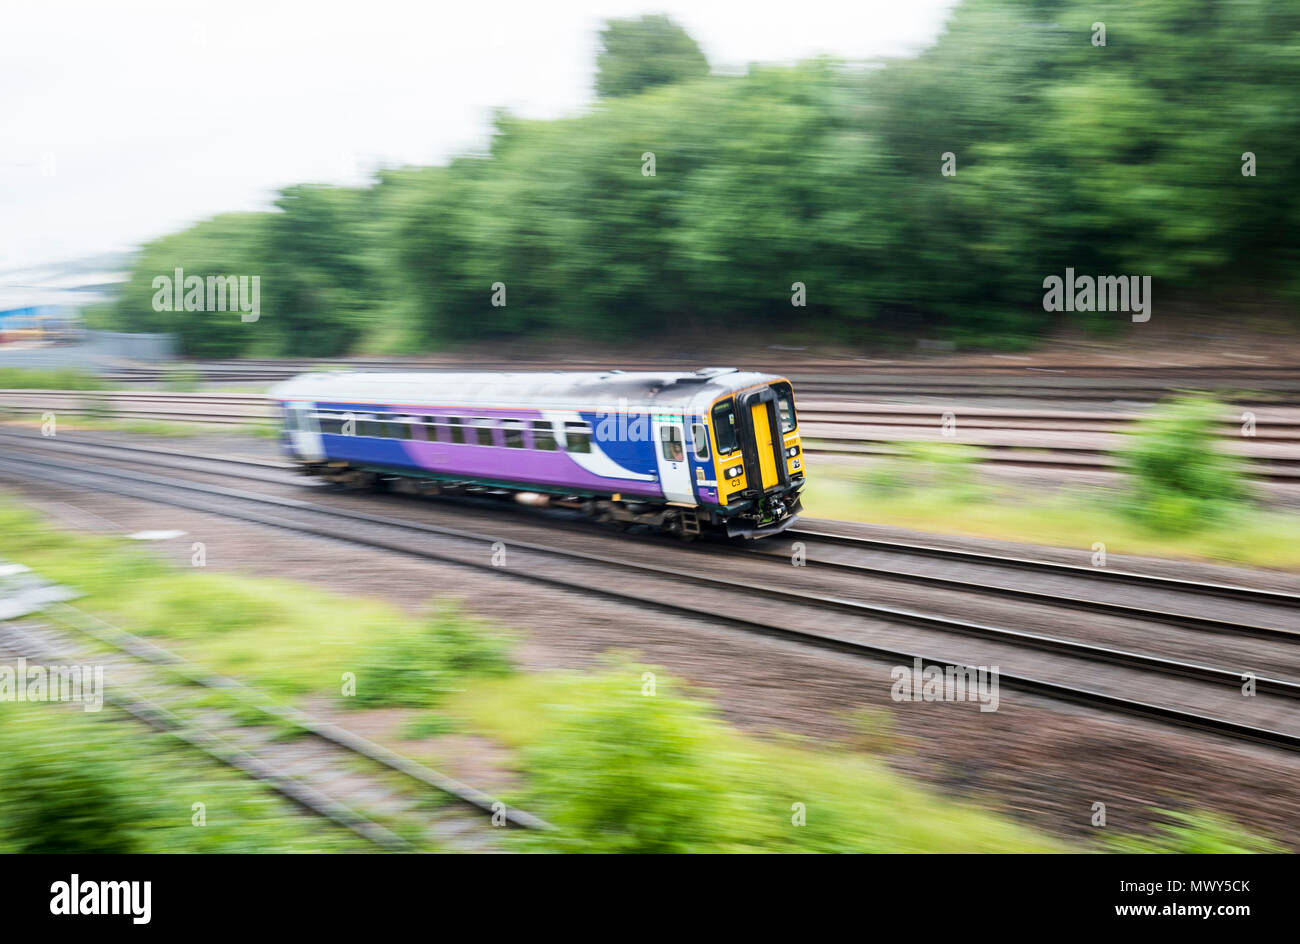 Un tren en Leeds como operador de tren norte axd tiene 165 servicios diarios hasta fines de julio para mejorar la confiabilidad en medio de grandes perturbaciones. Foto de stock